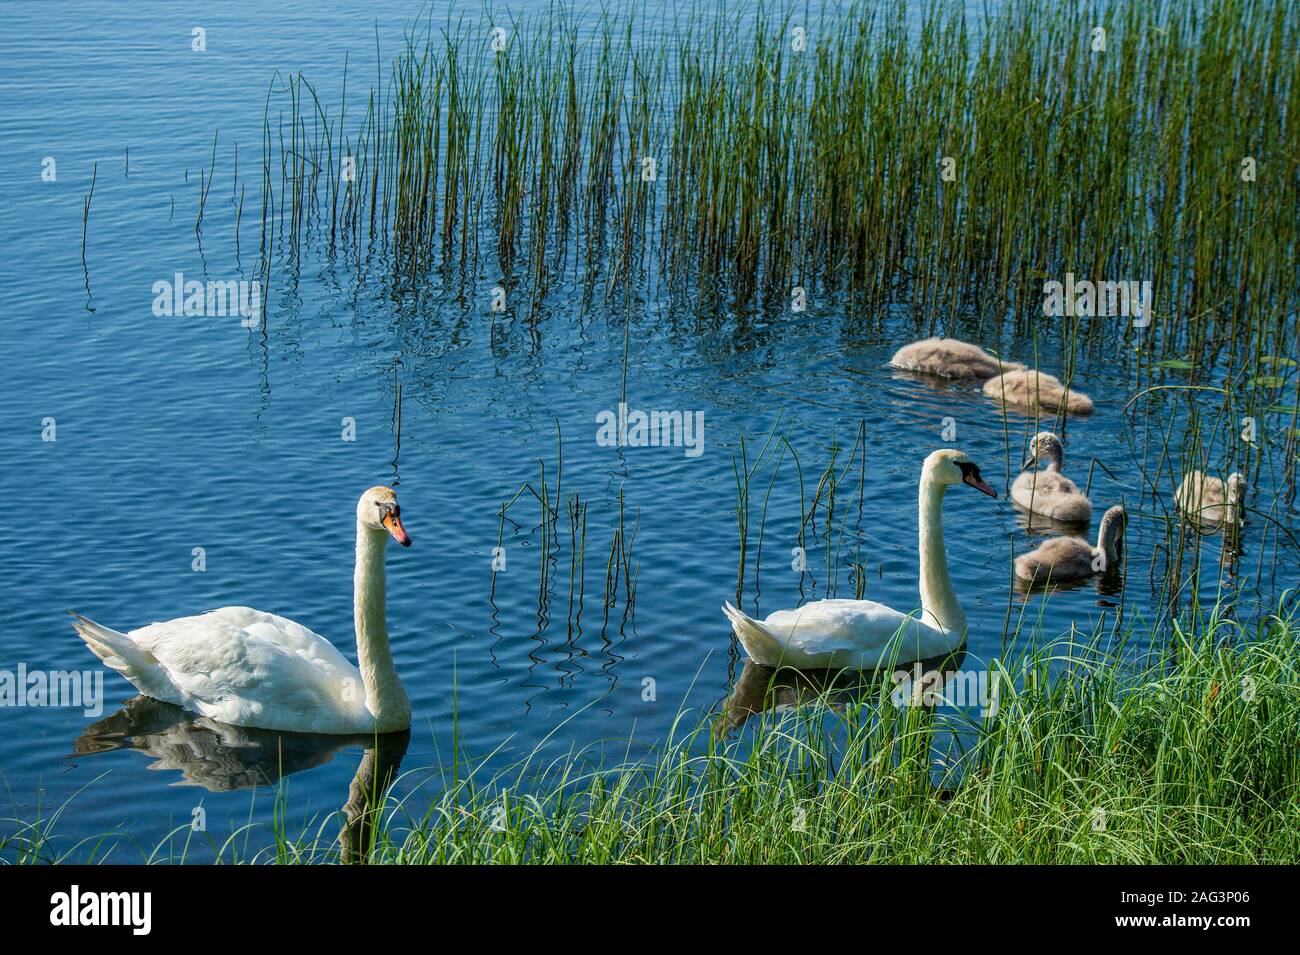 La famille Swan nageant sur un étang bleu entouré d'une grande herbe verte. Banque D'Images